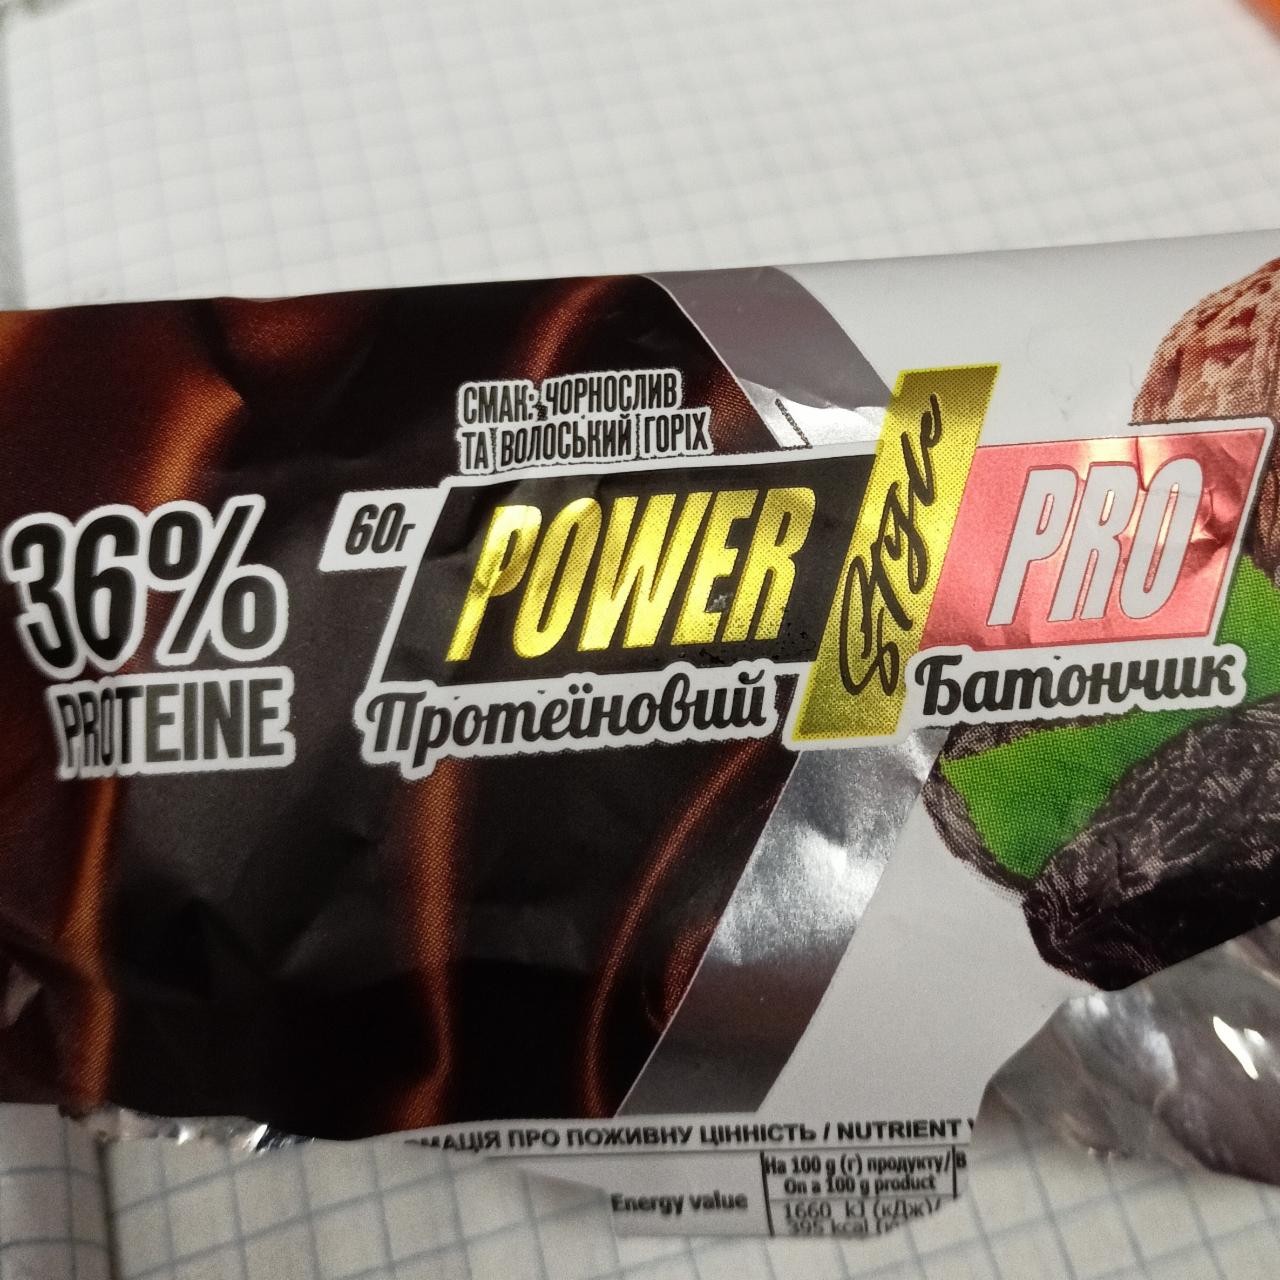 Фото - Протеиновый батрнчик 36% чернослив и греческий орех Power pro